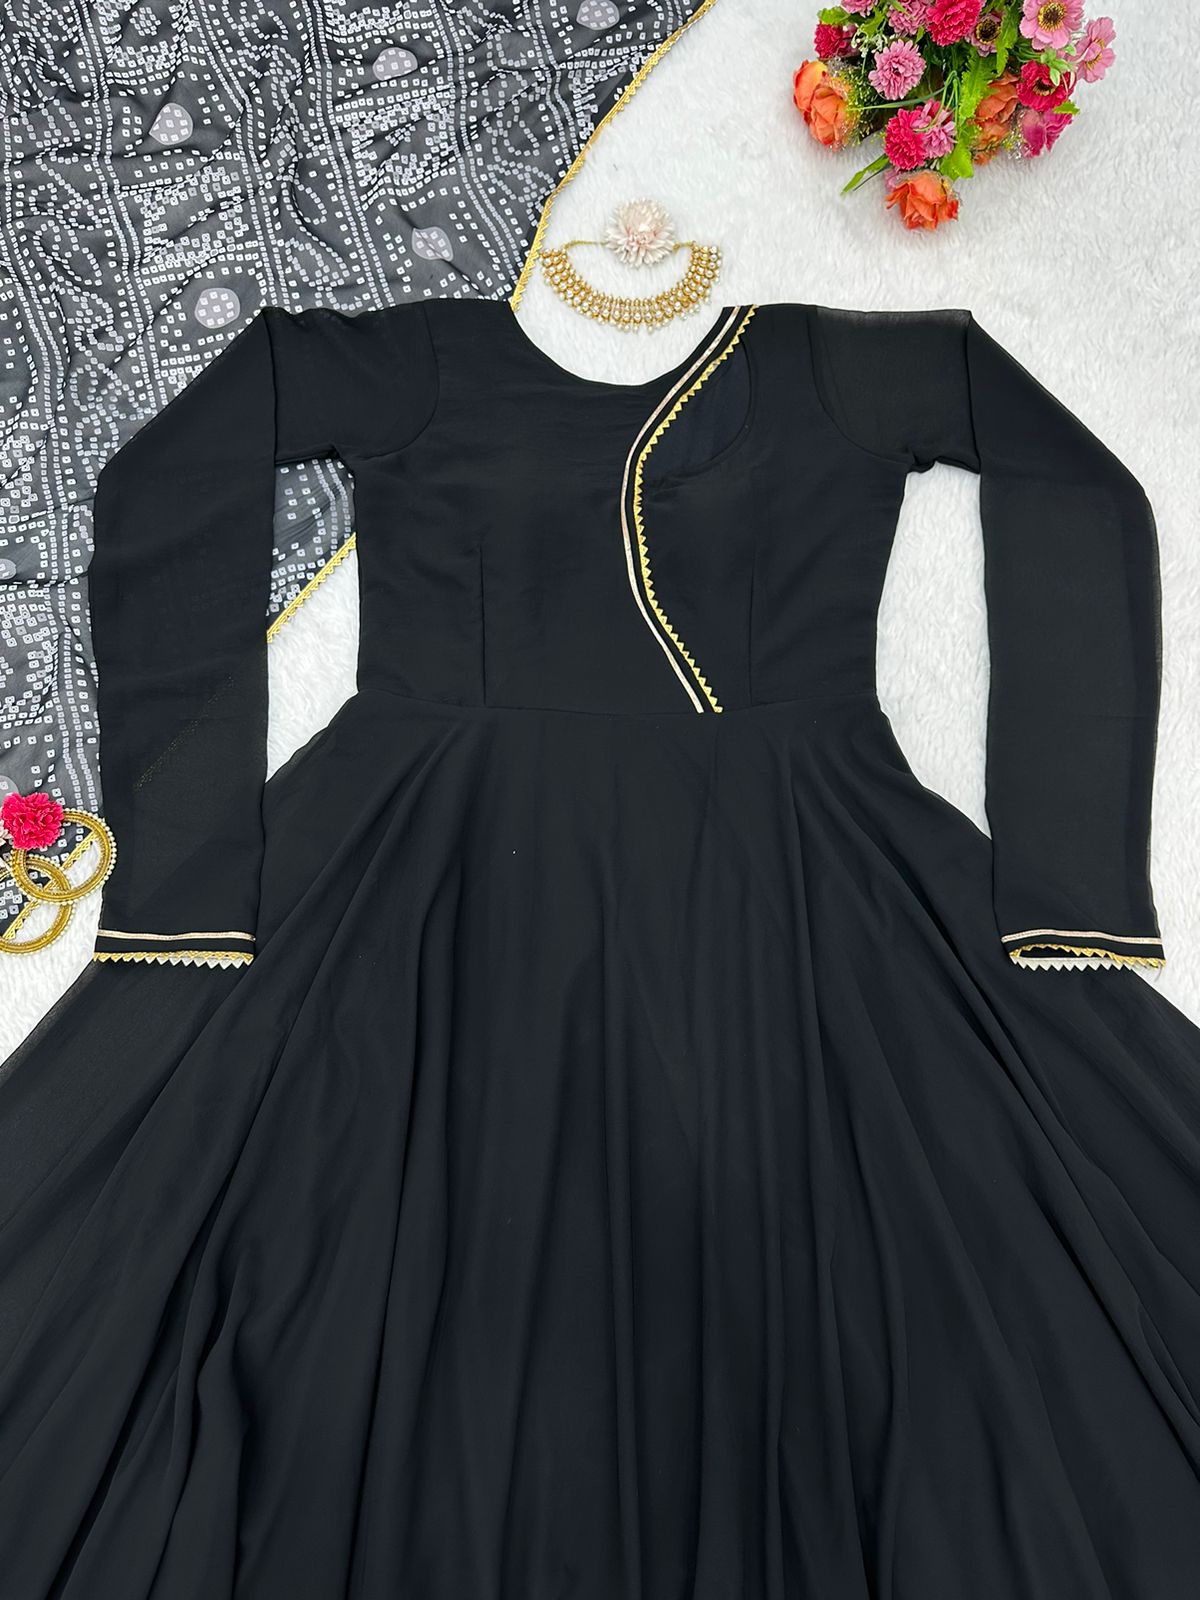 V-line Off Shoulder Fleece Top Elegant Black Gown | Childrens wedding  dresses, Girls pageant dresses, Princess ball gowns